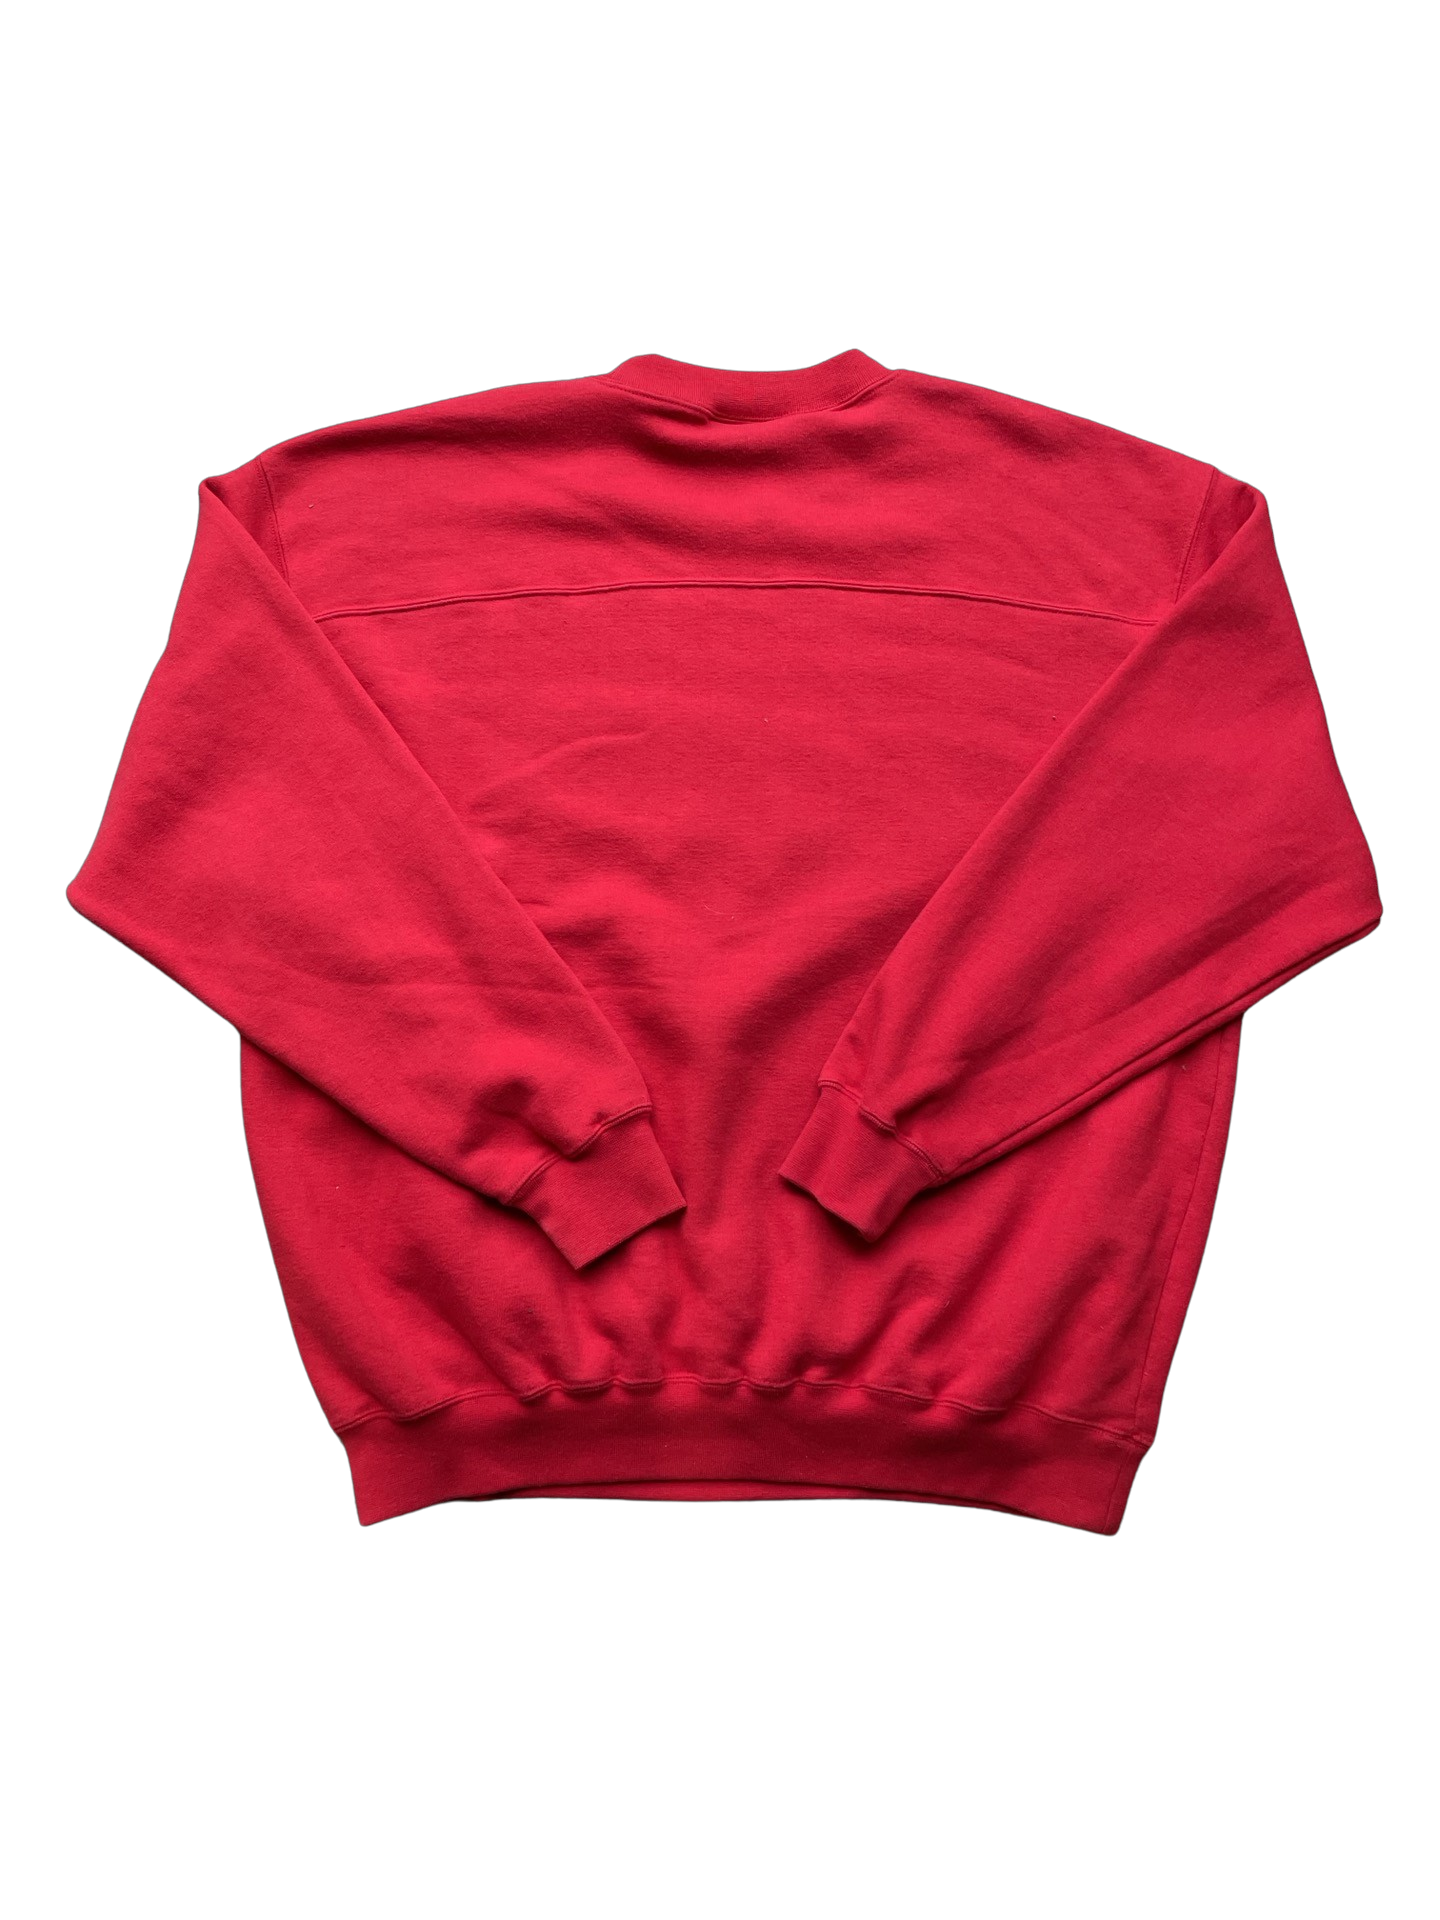 Vintage Tampa Bay Buccaneers Sweatshirt